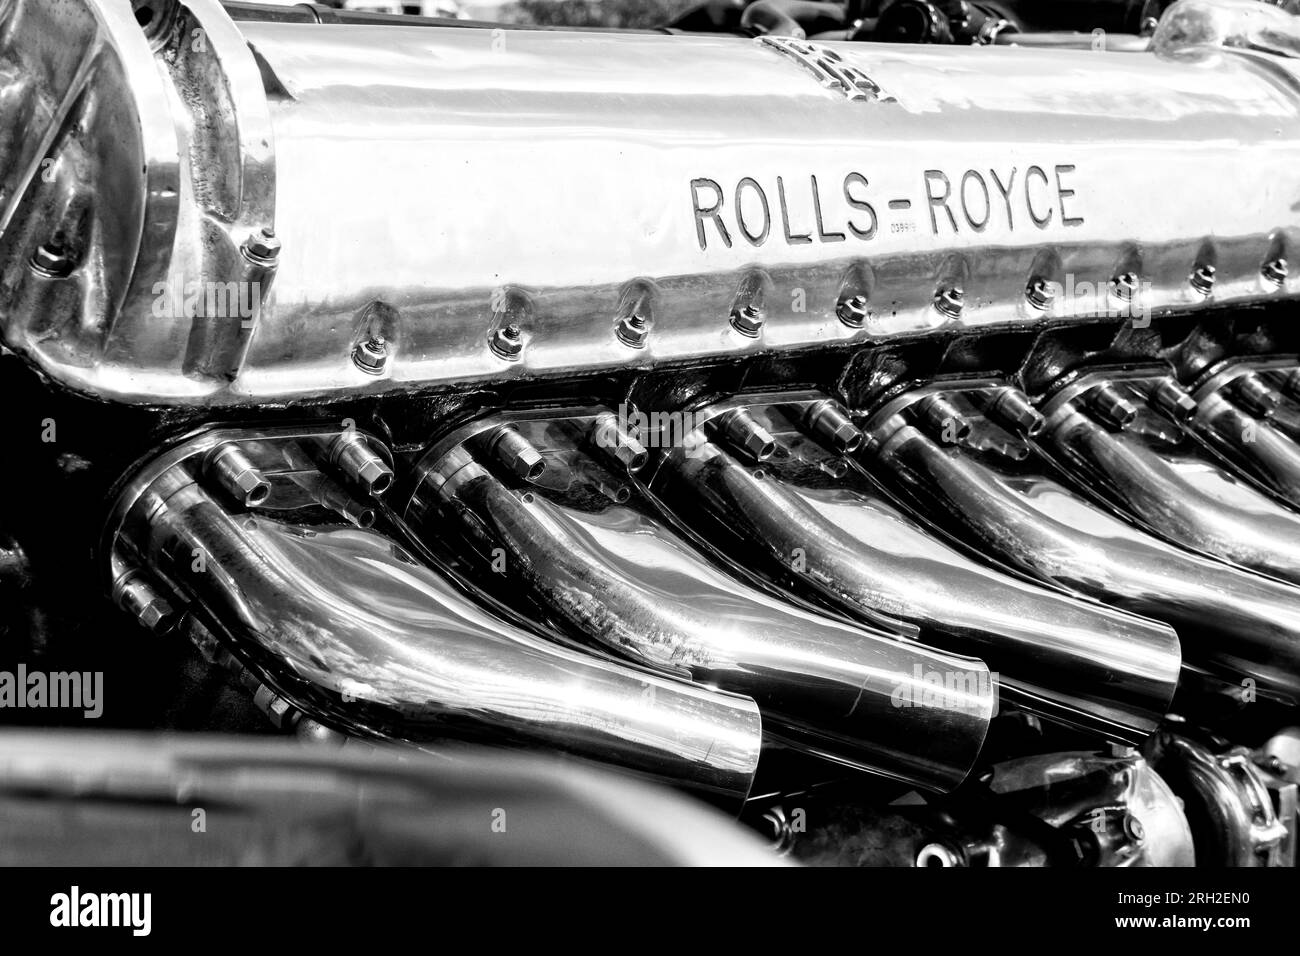 Rolls Royce Merlin Aero Engine utilizzato nei caccia Spitfire e Hurricane della seconda guerra mondiale. Foto Stock